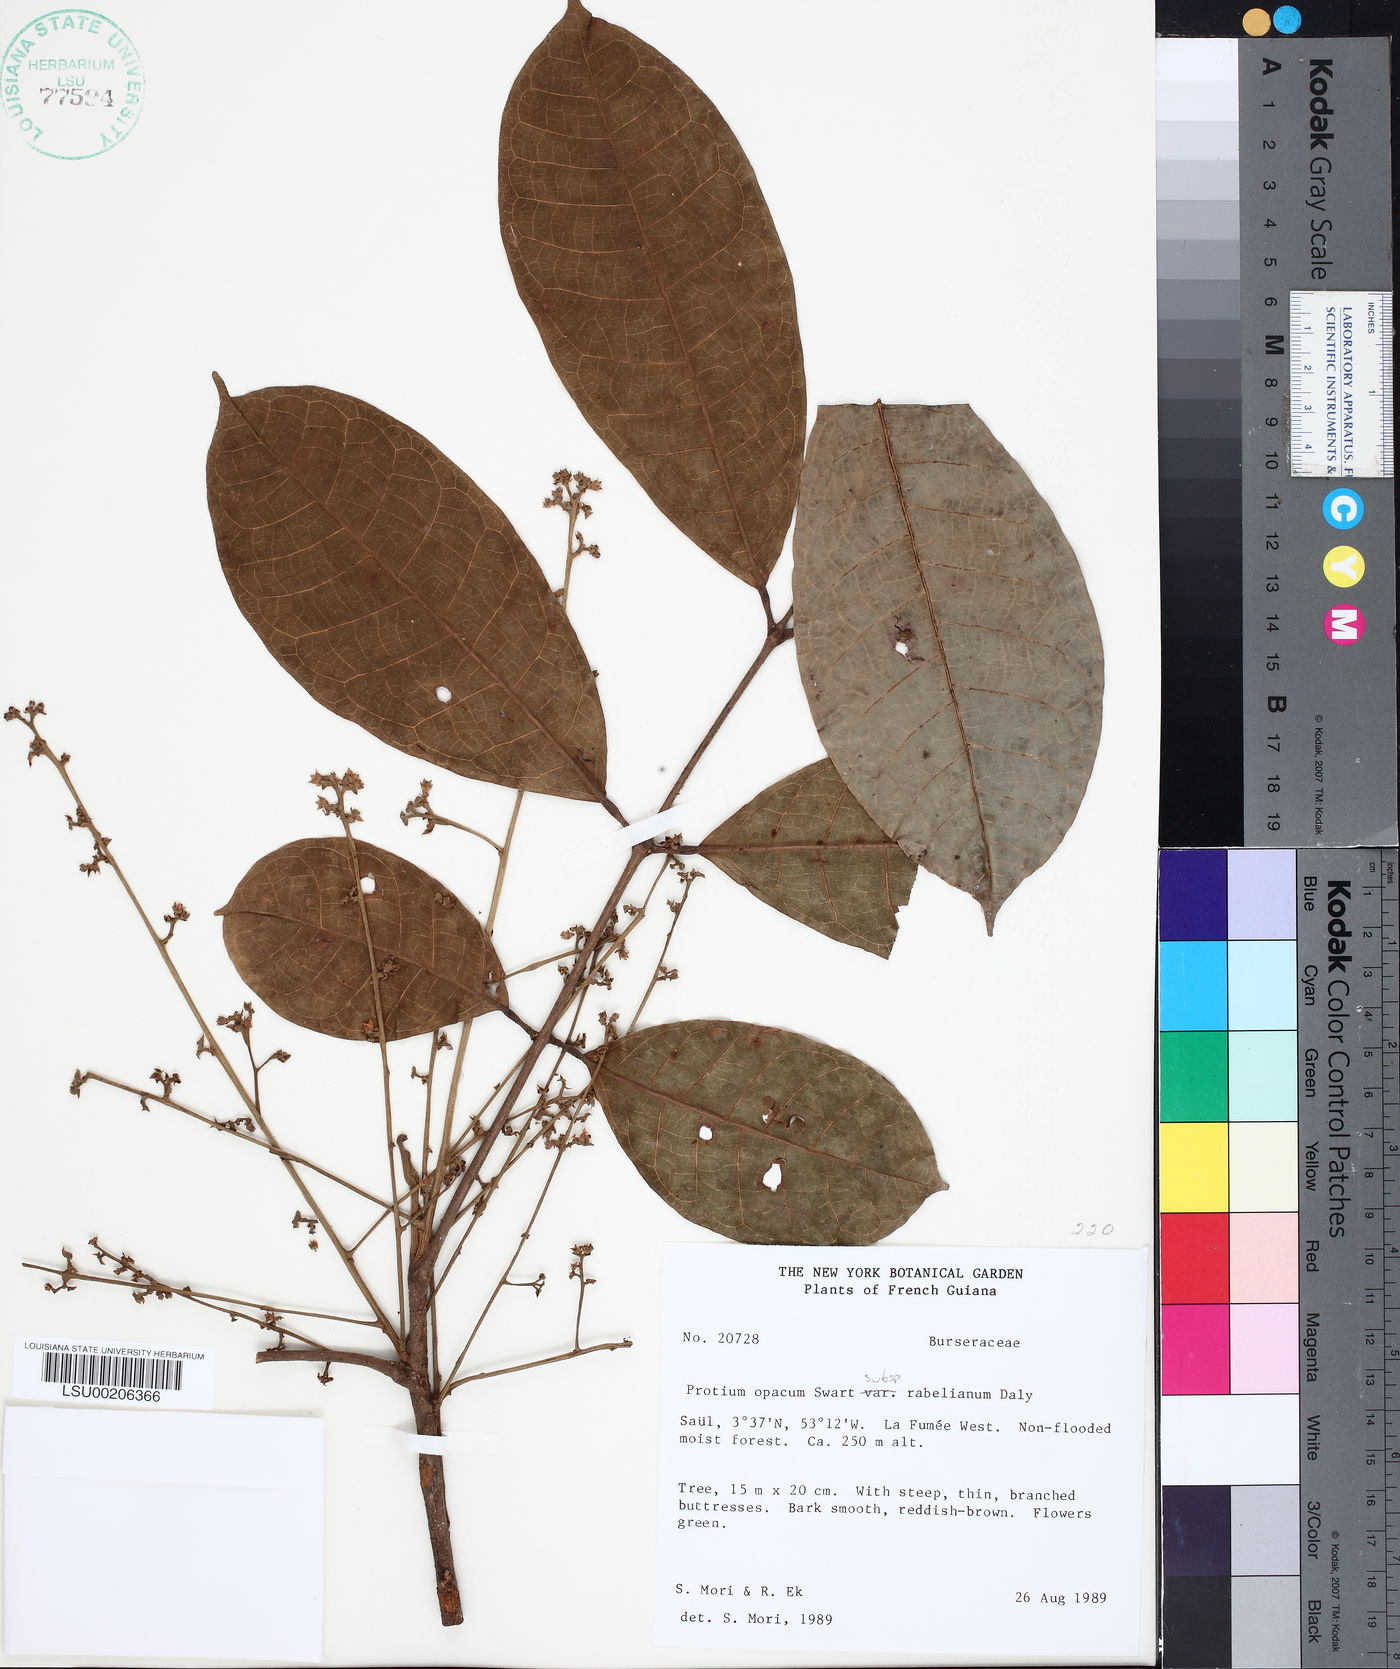 Protium opacum subsp. rabelianum image